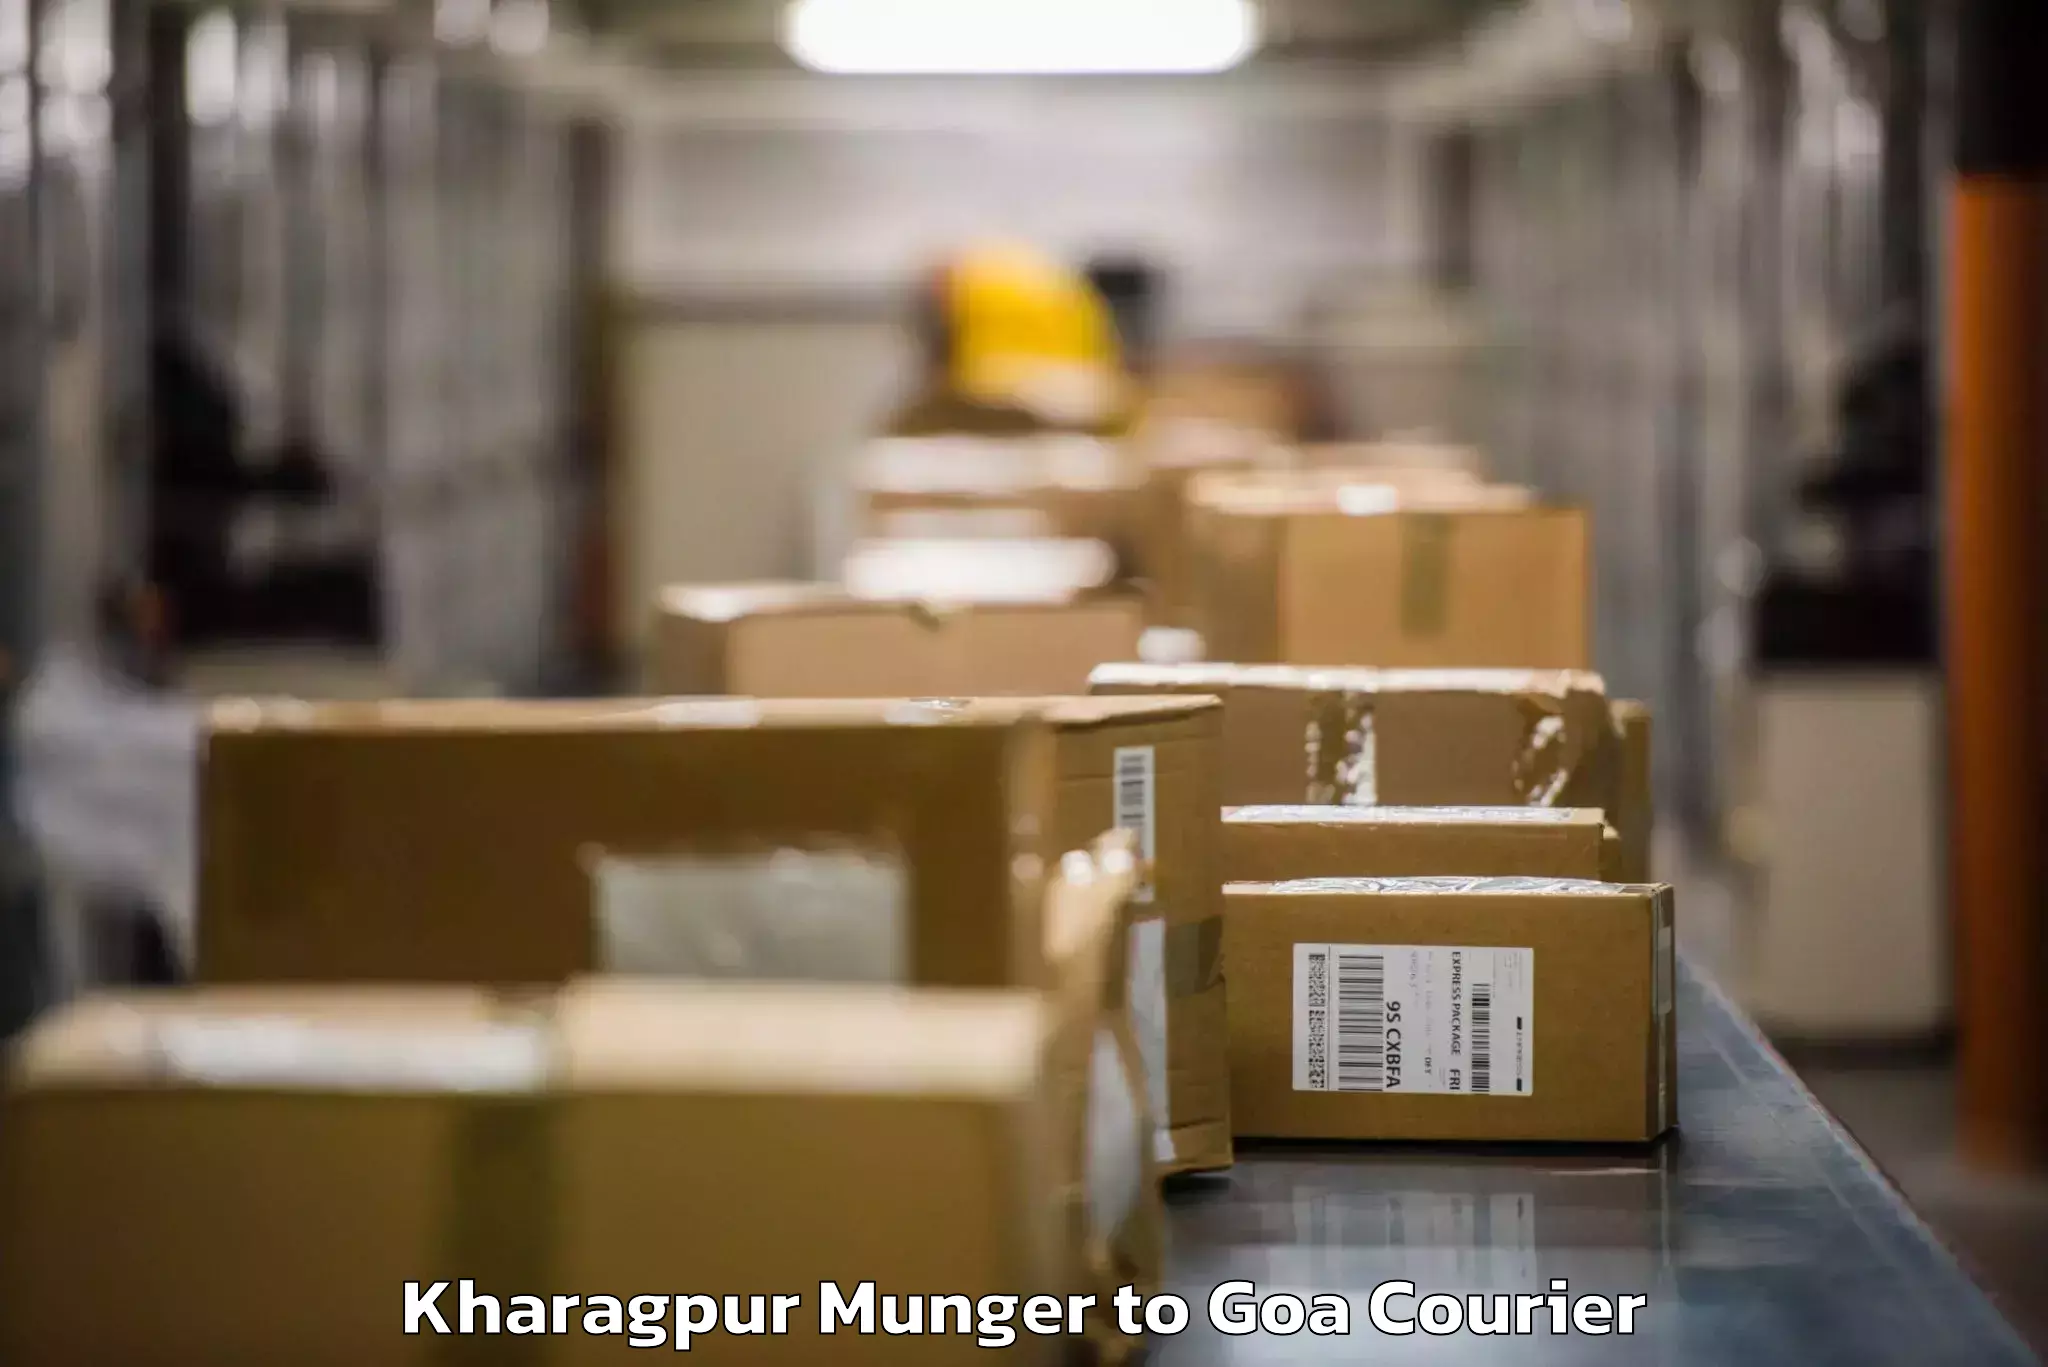 Luggage shipping service Kharagpur Munger to Vasco da Gama